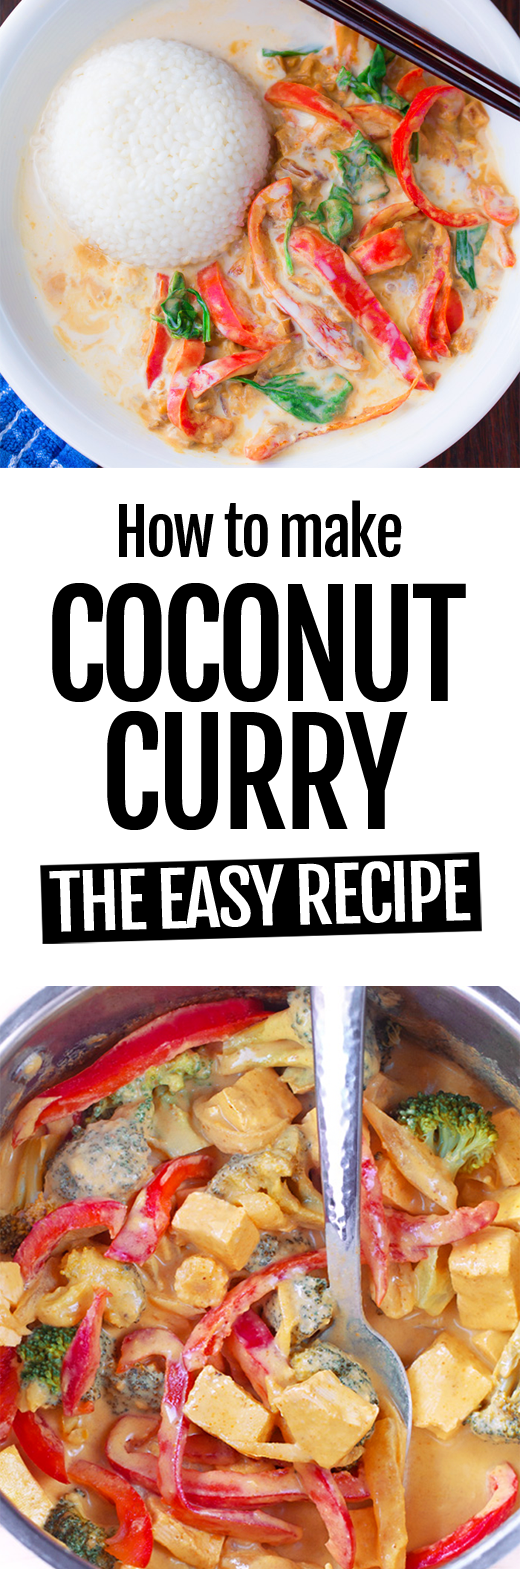 Cómo hacer la receta de curry de coco más fácil